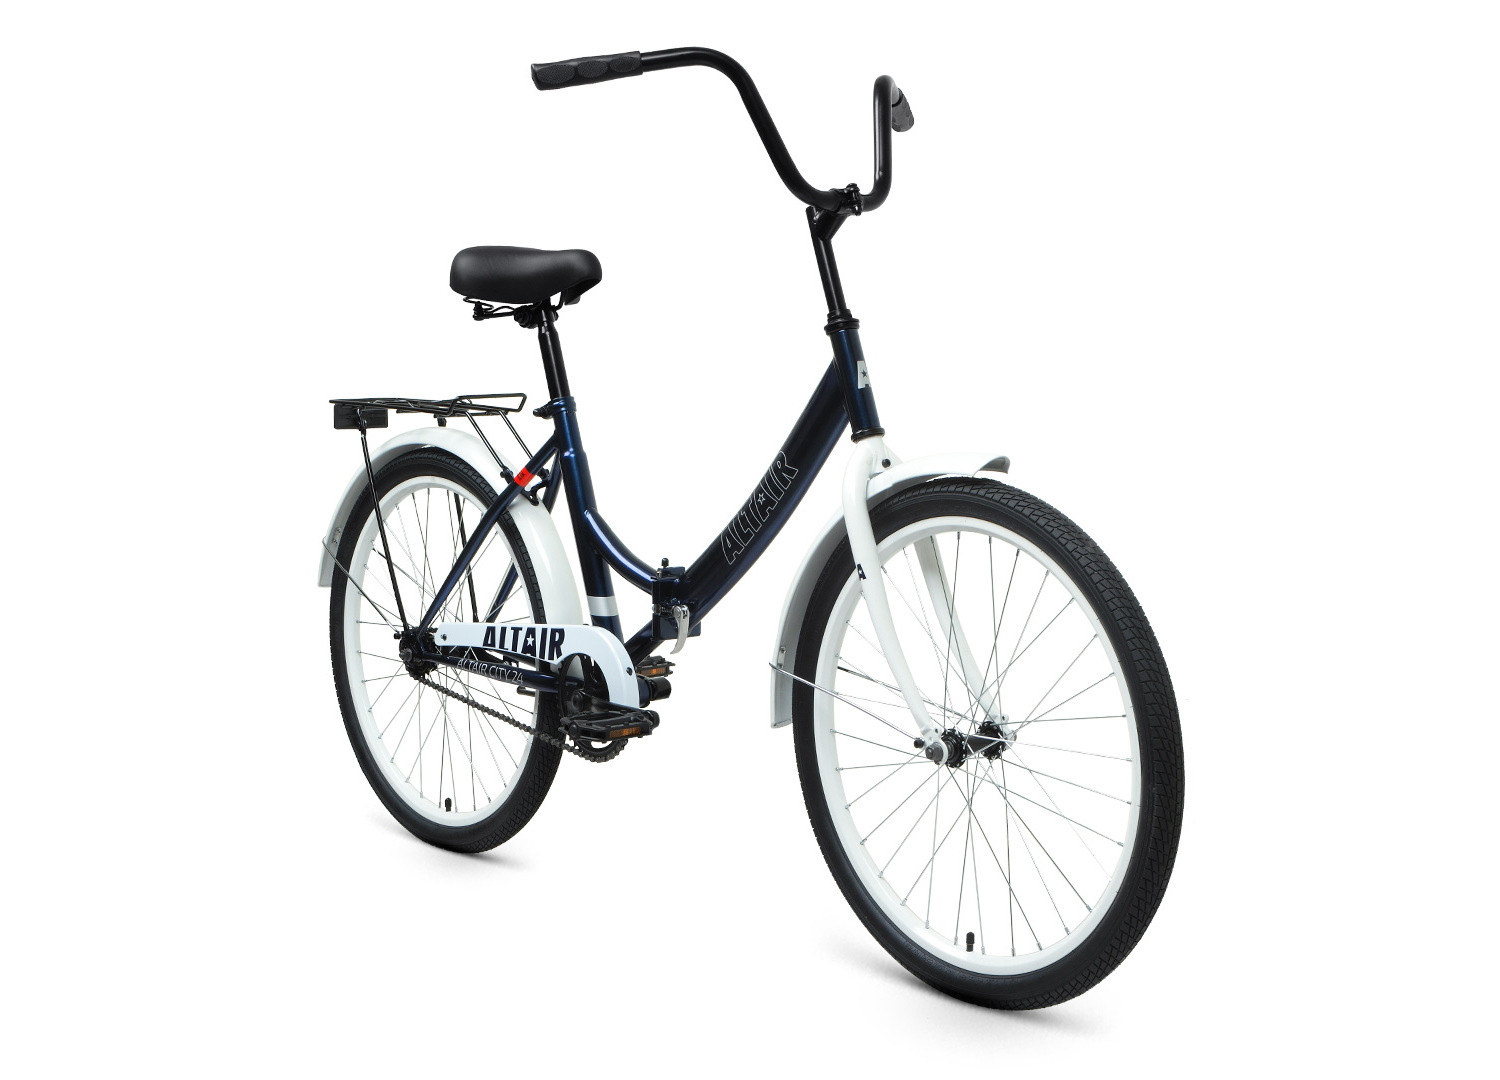 Складной велосипед Altair City 24 FR, год 2023, цвет Голубой-Белый, ростовка 16